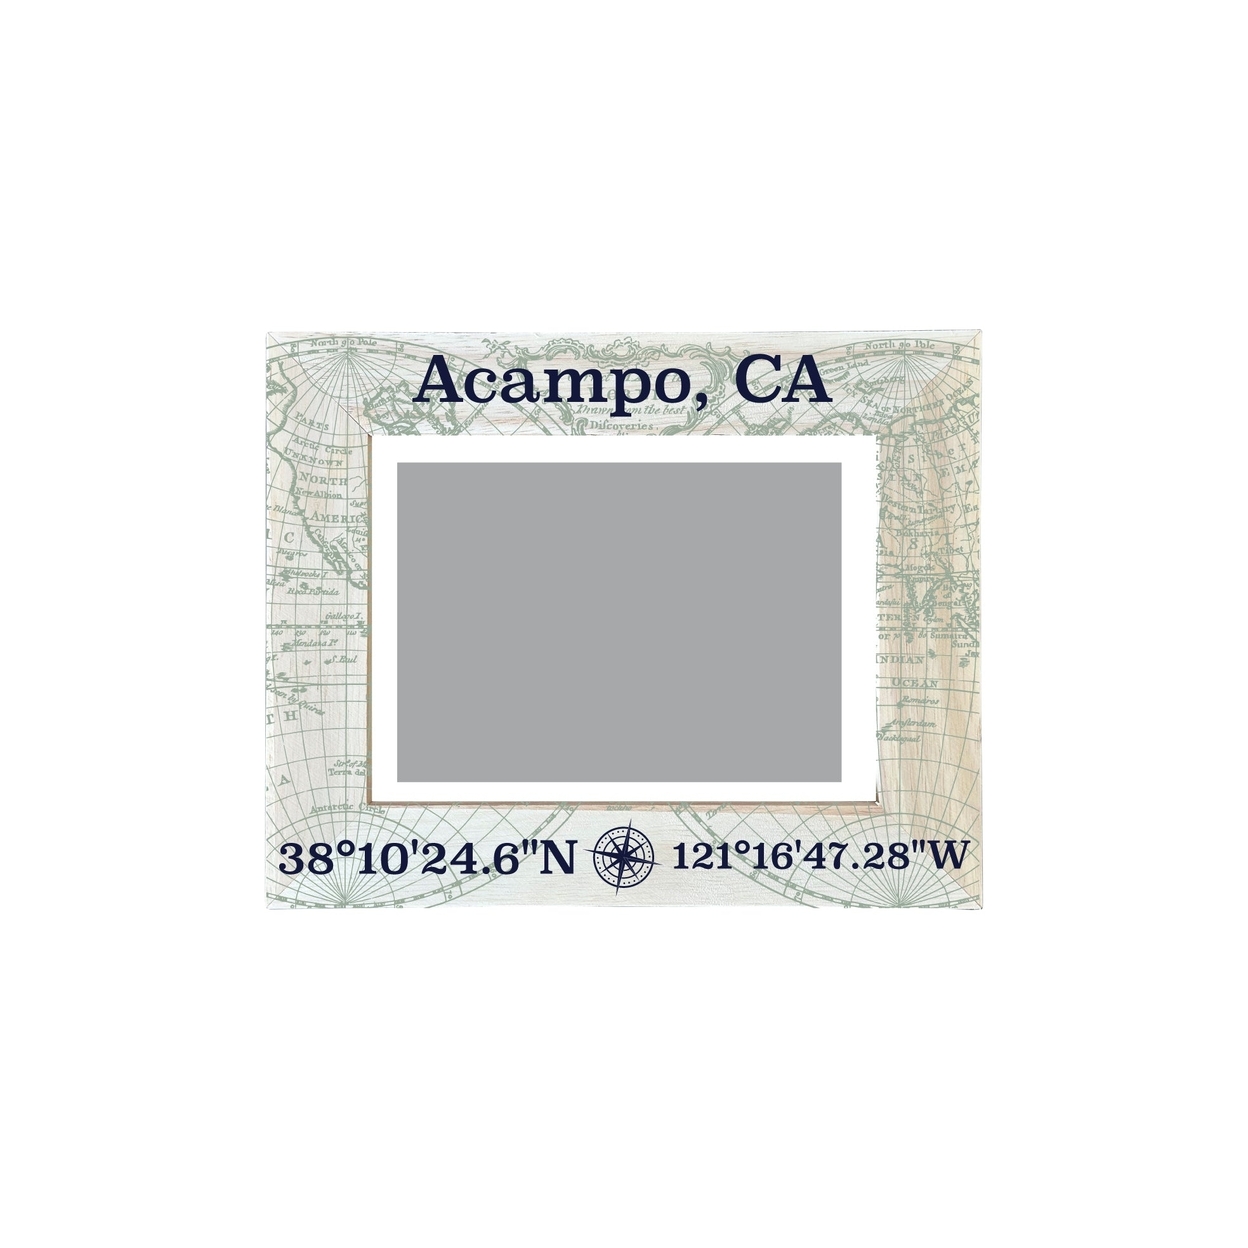 Acampo California Souvenir Wooden Photo Frame Compass Coordinates Design Matted To 4 X 6